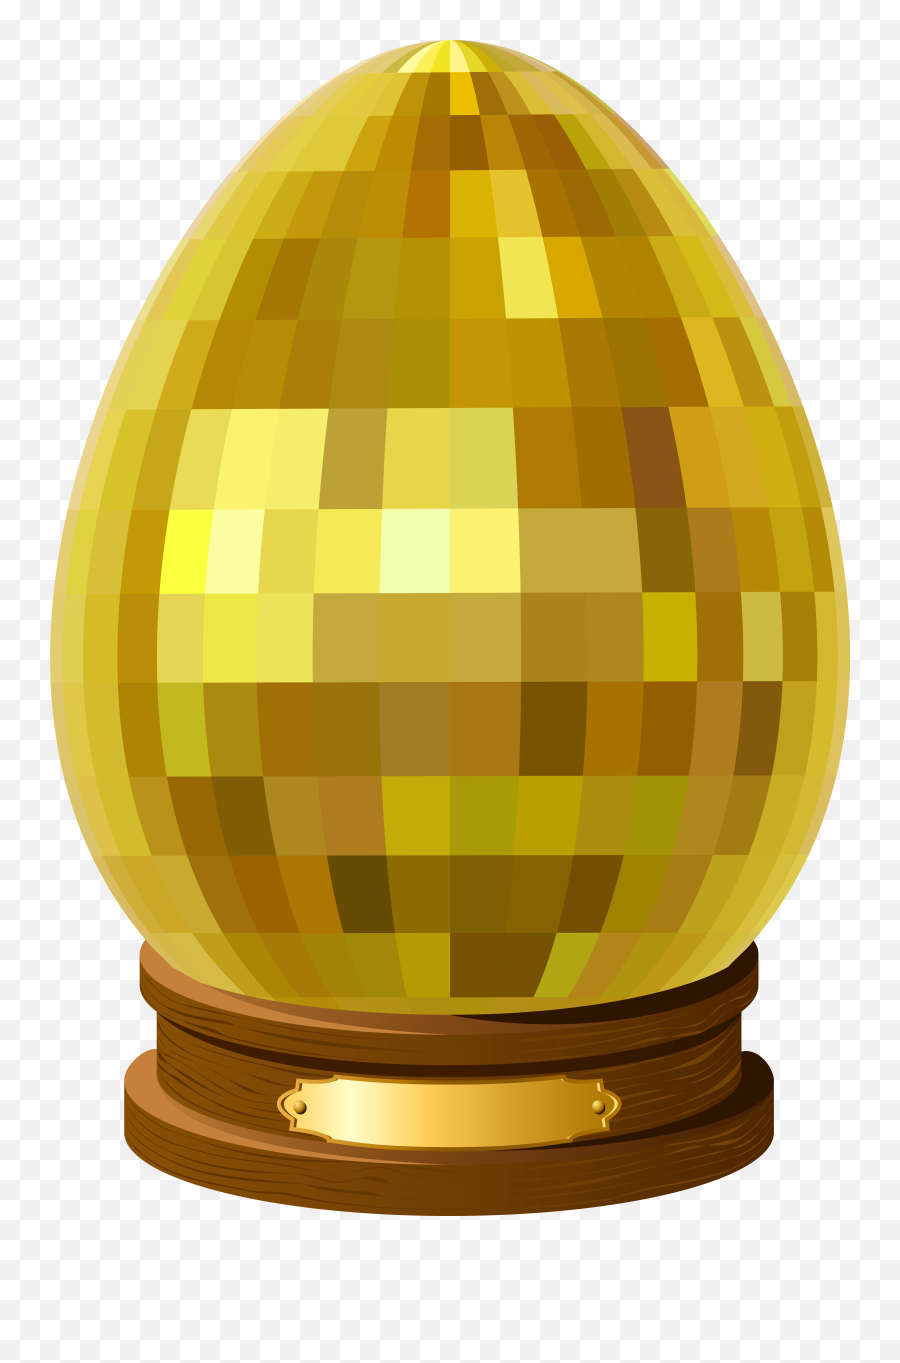 Free Transparent Vaporwave Png Download - Golden Easter Cartoon Eggs,Vaporwave Statue Png